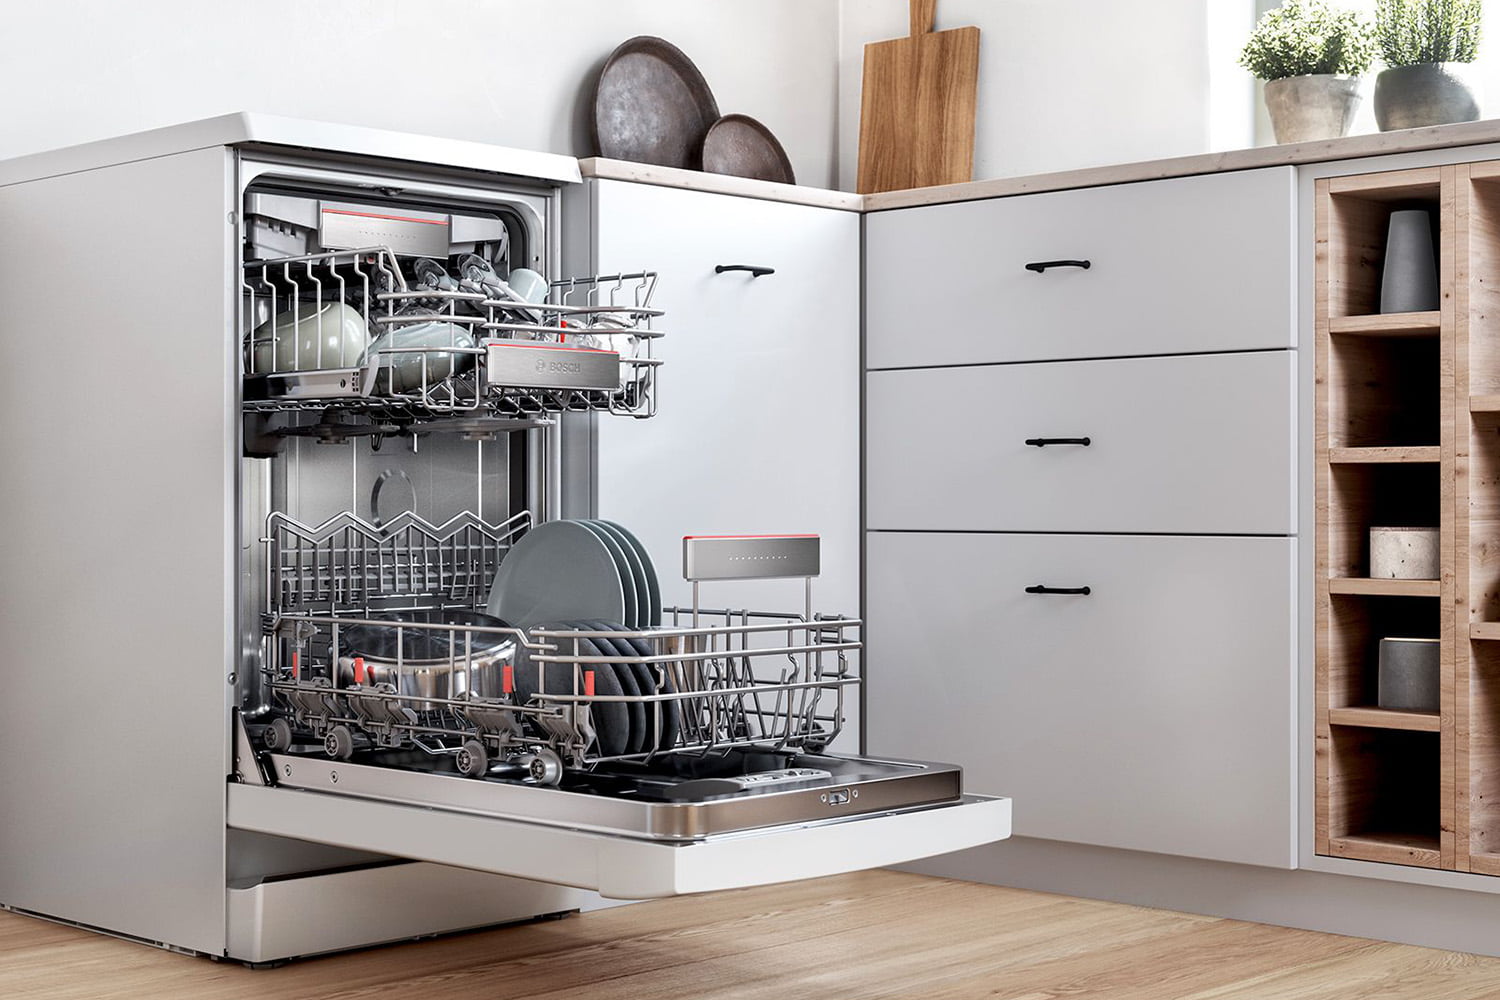 Как выбрать посудомоечную машину для дома: советы экспертов